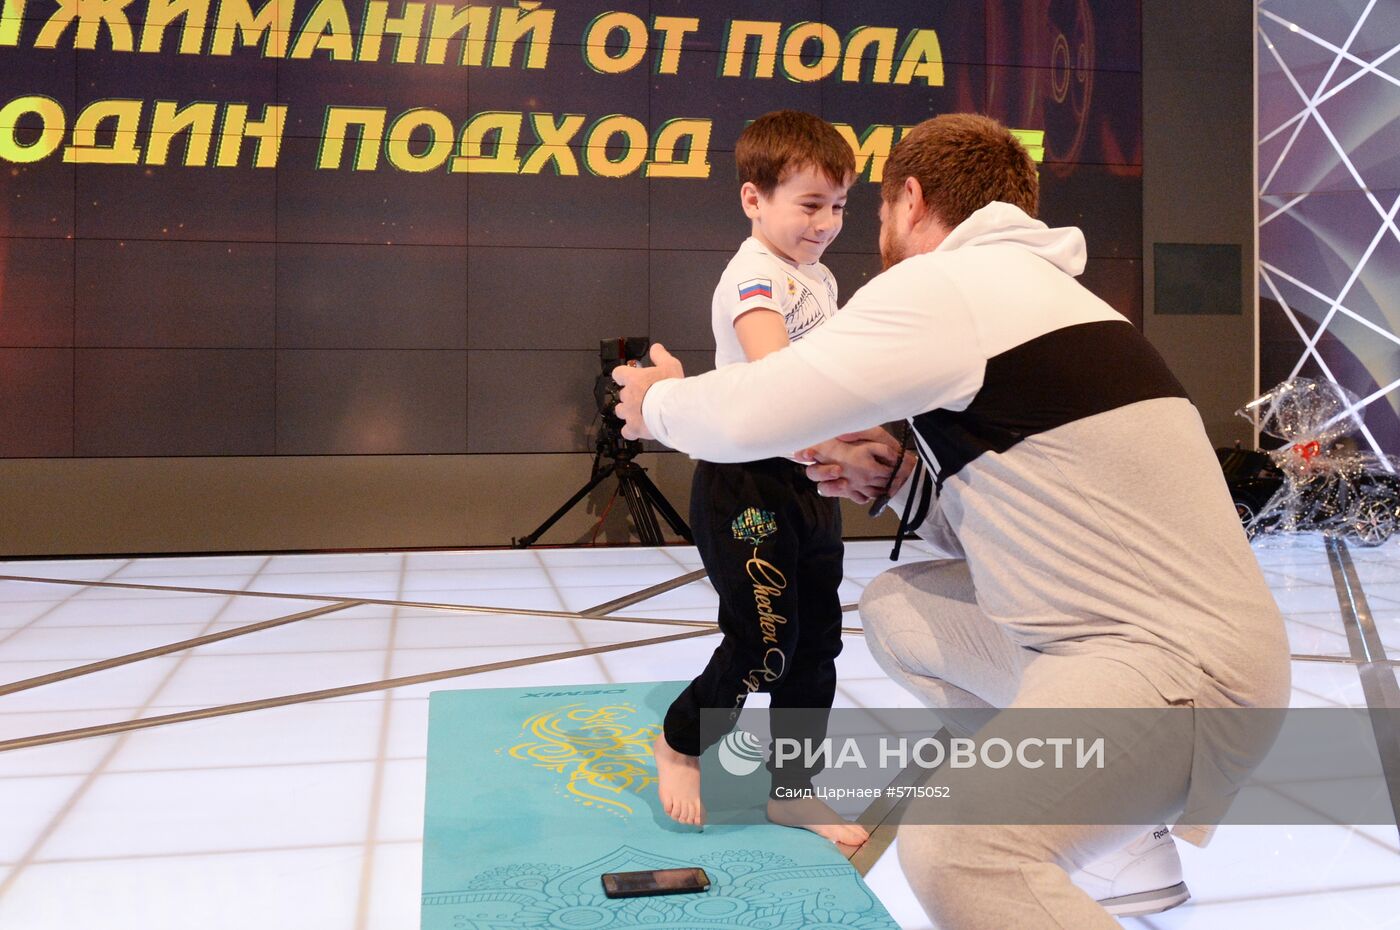 Попытка установления рекорда по отжиманию пятилетним мальчиком из Чечни